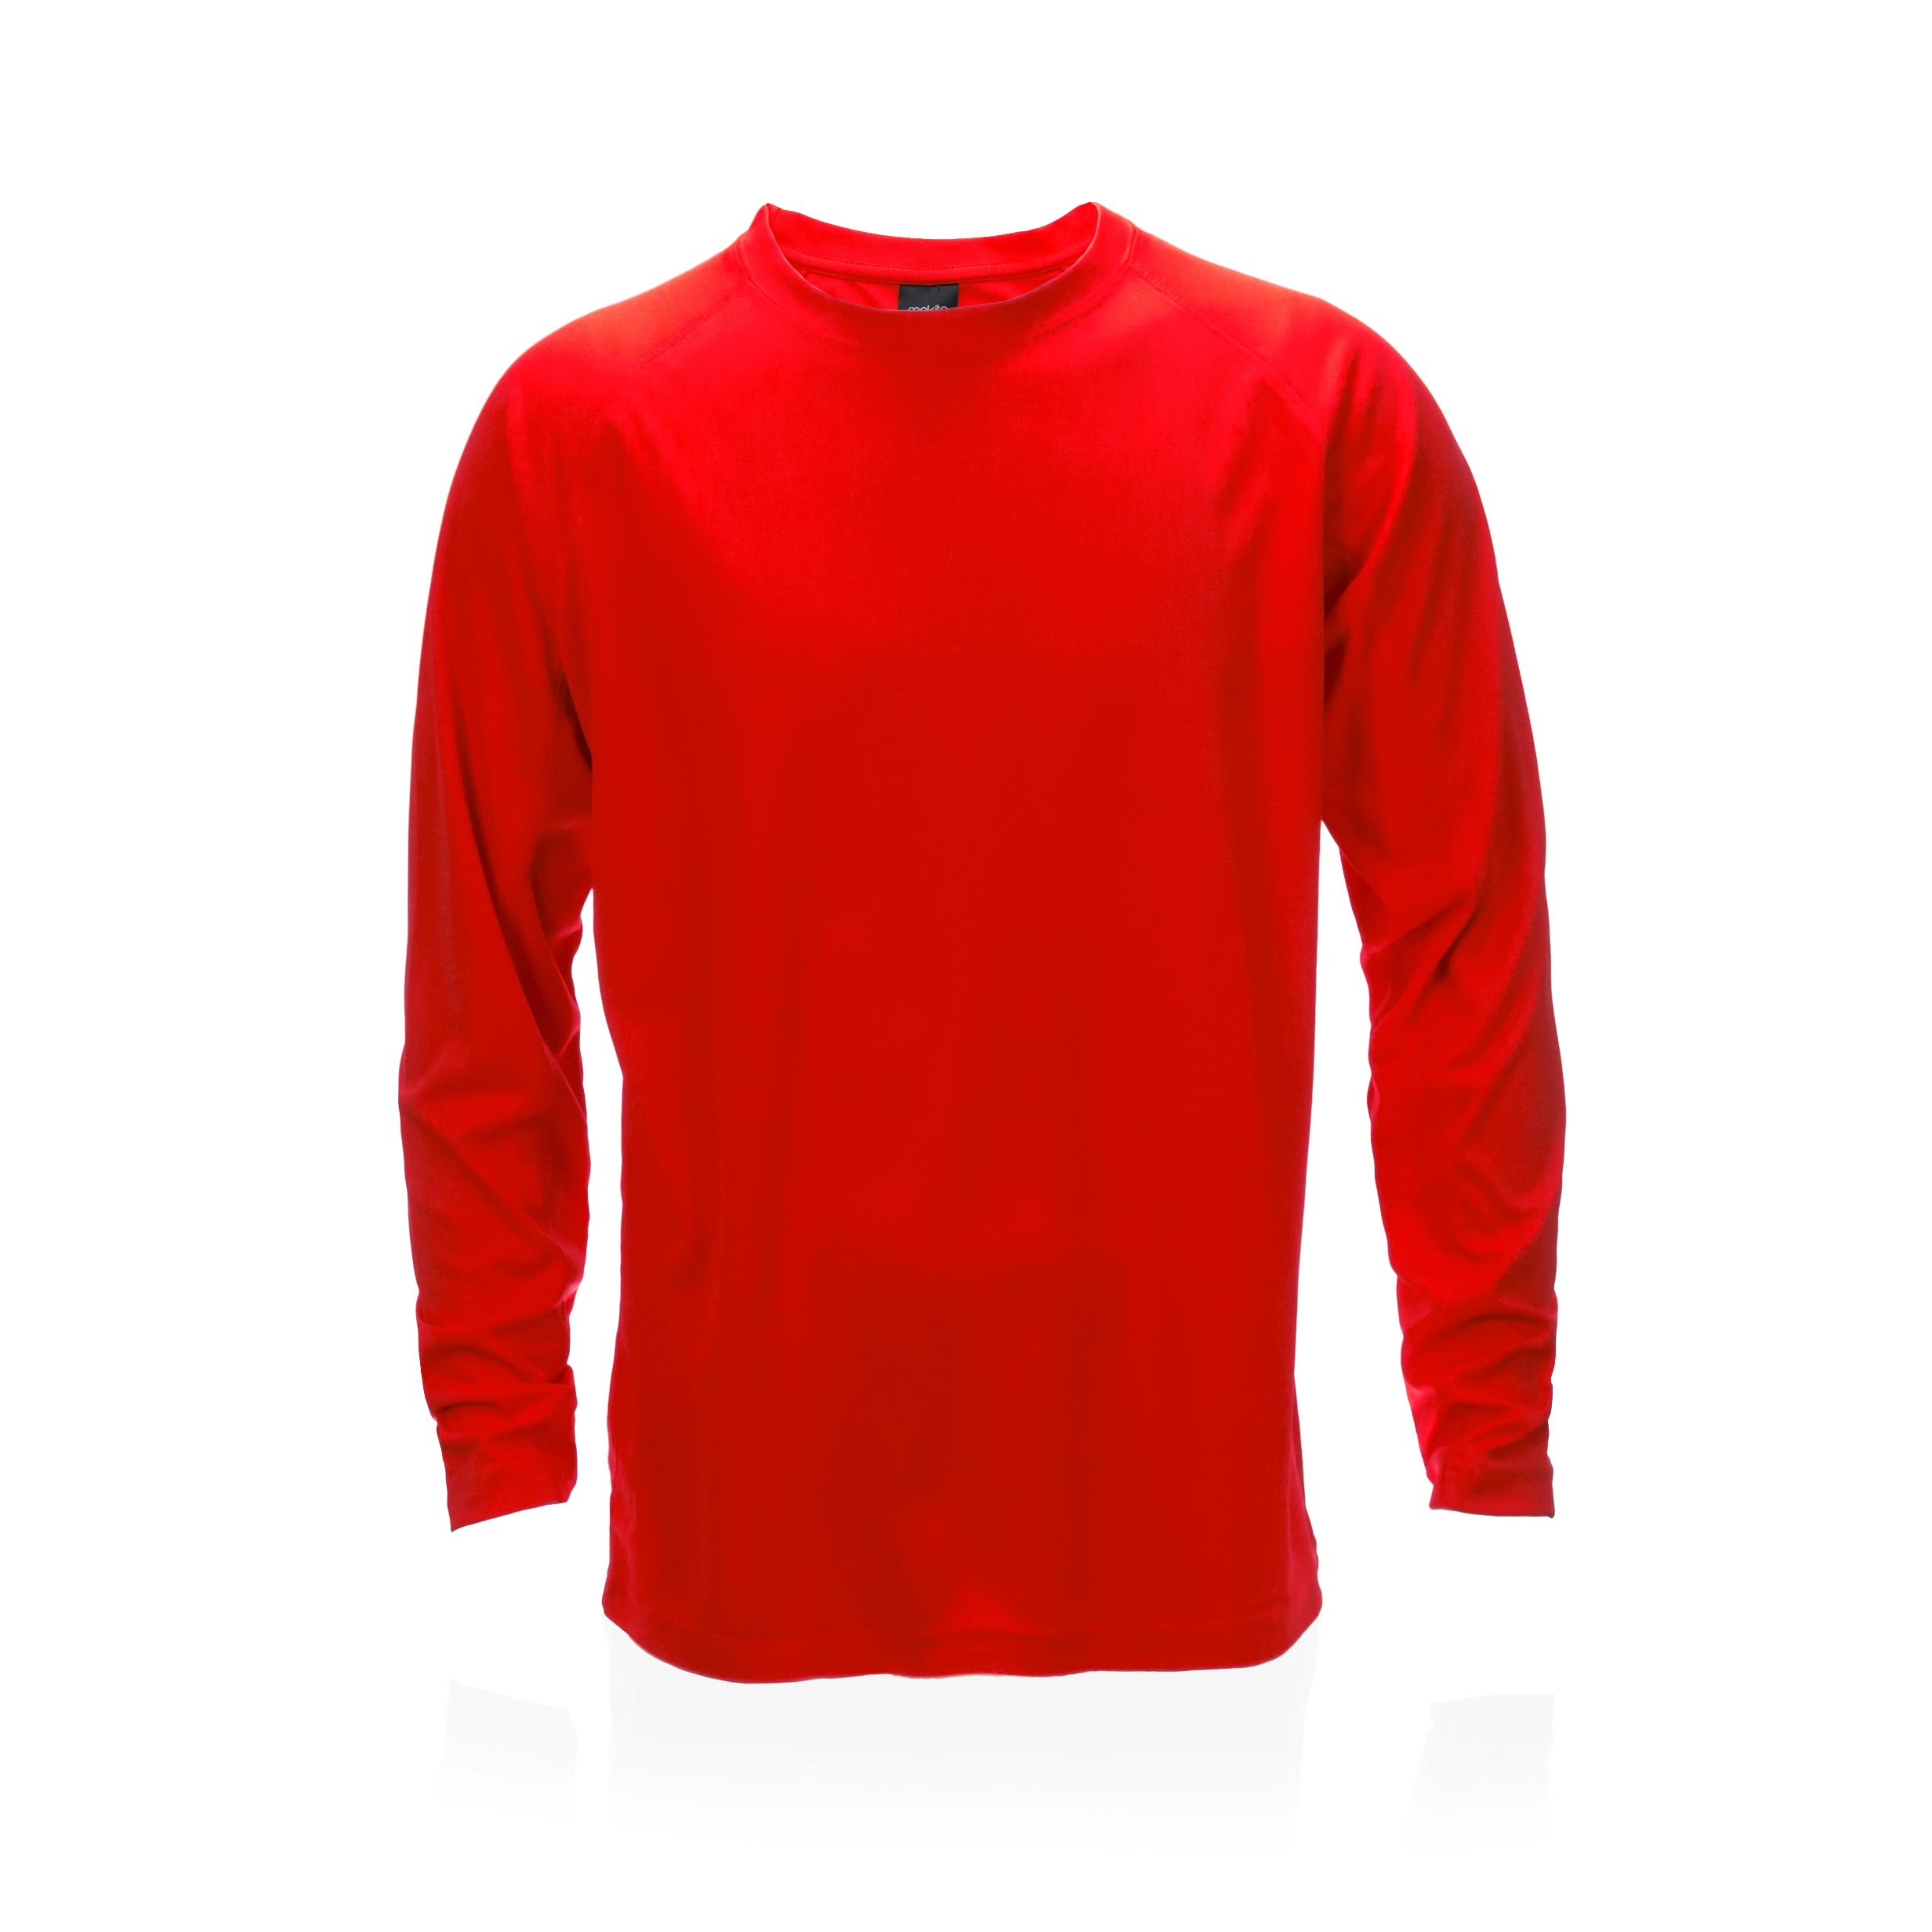 Camiseta Adulto McComb rojo talla L